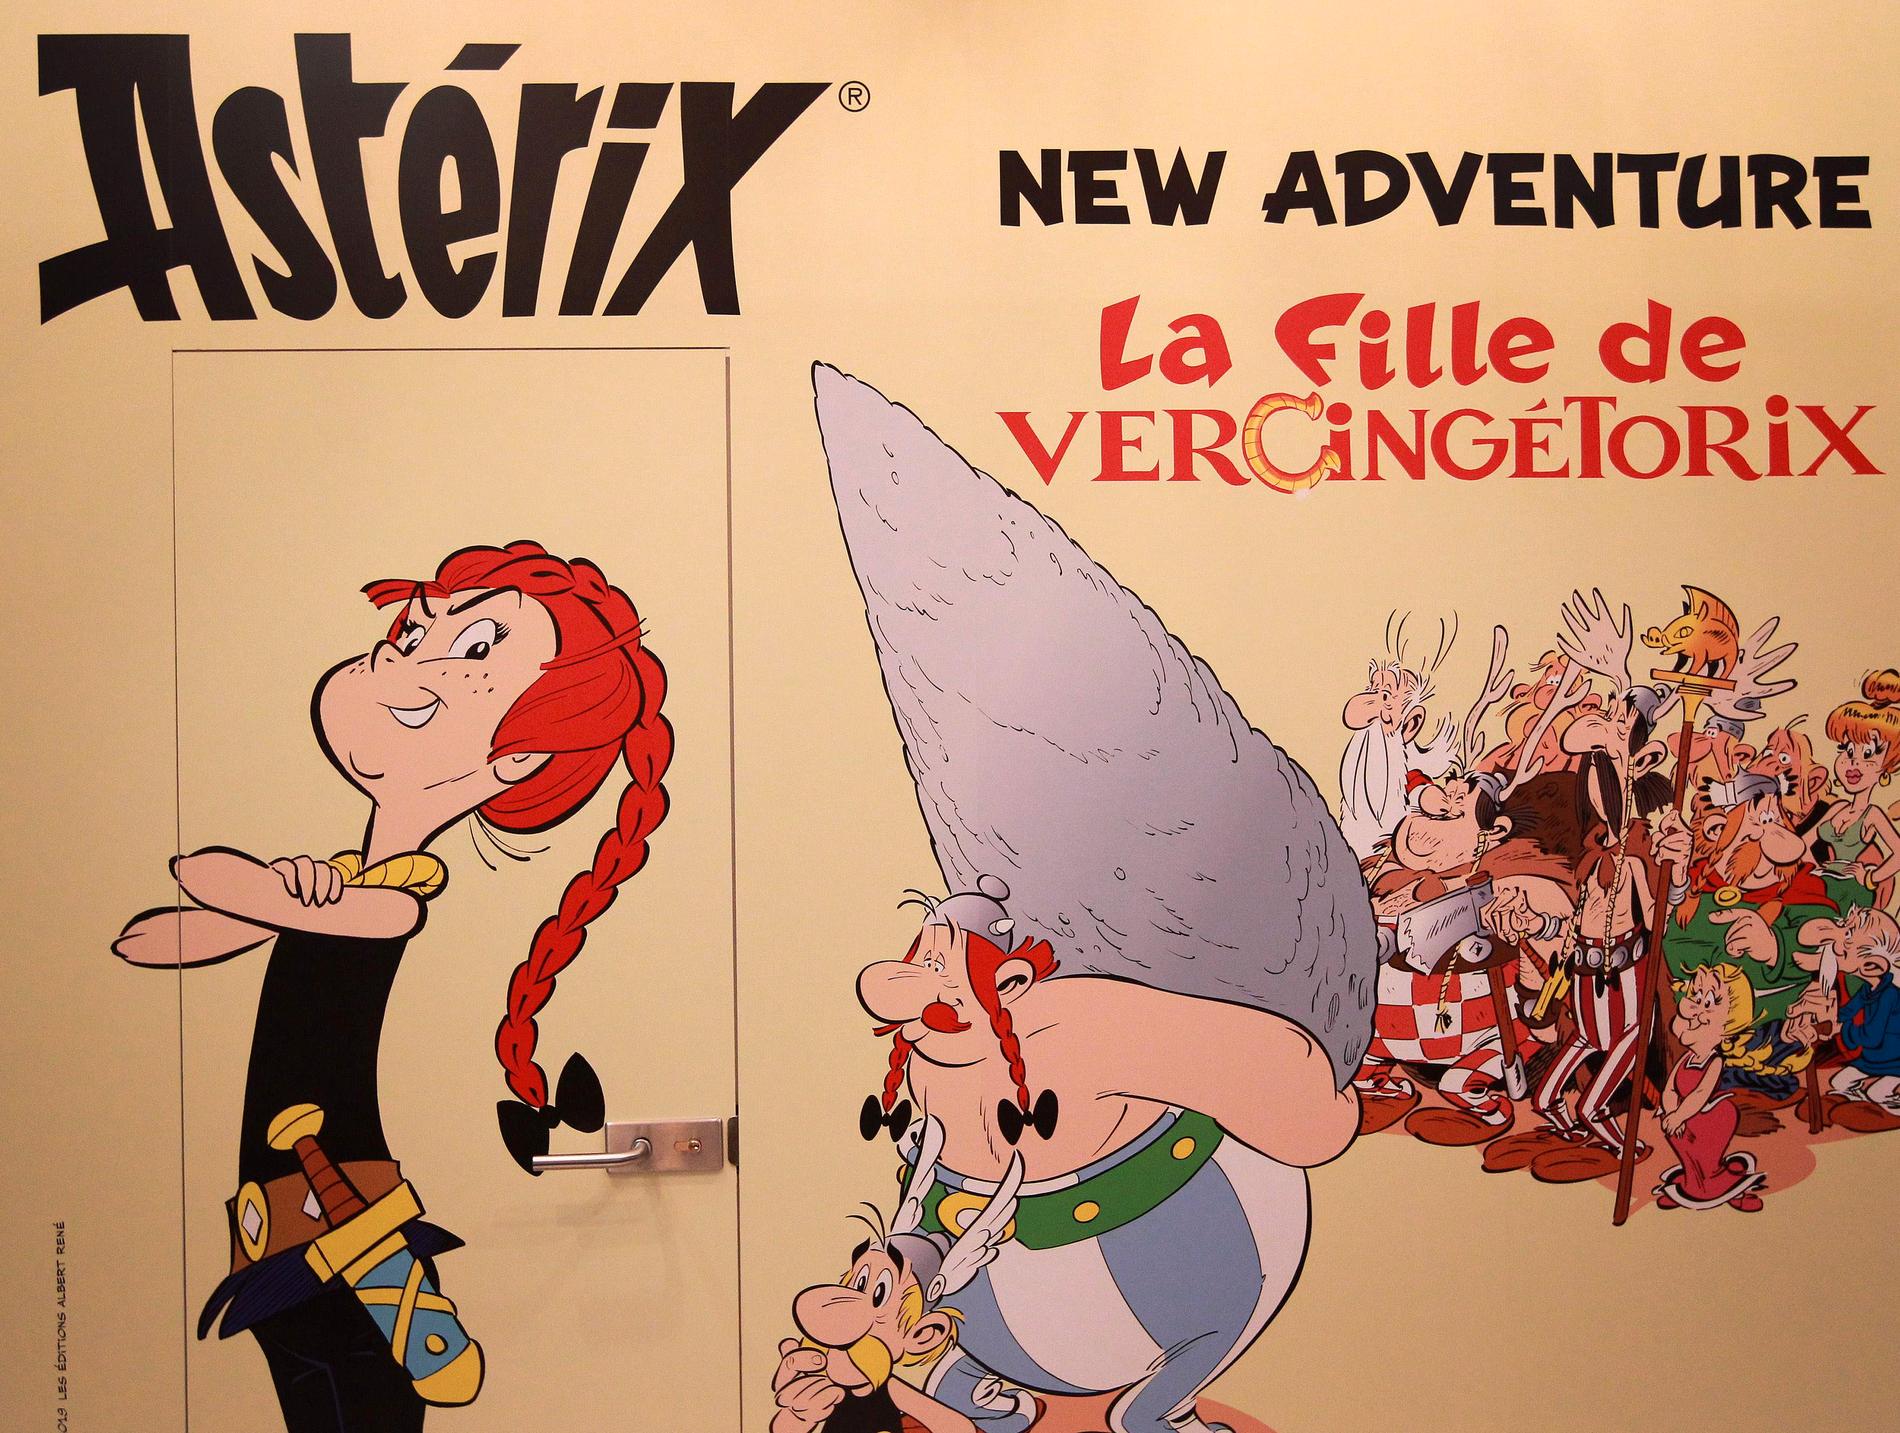 Ett litet steg för människan, ett bautasteg för Asterix. En reklamskylt för nya albumet "La fille de Vercingétorix".